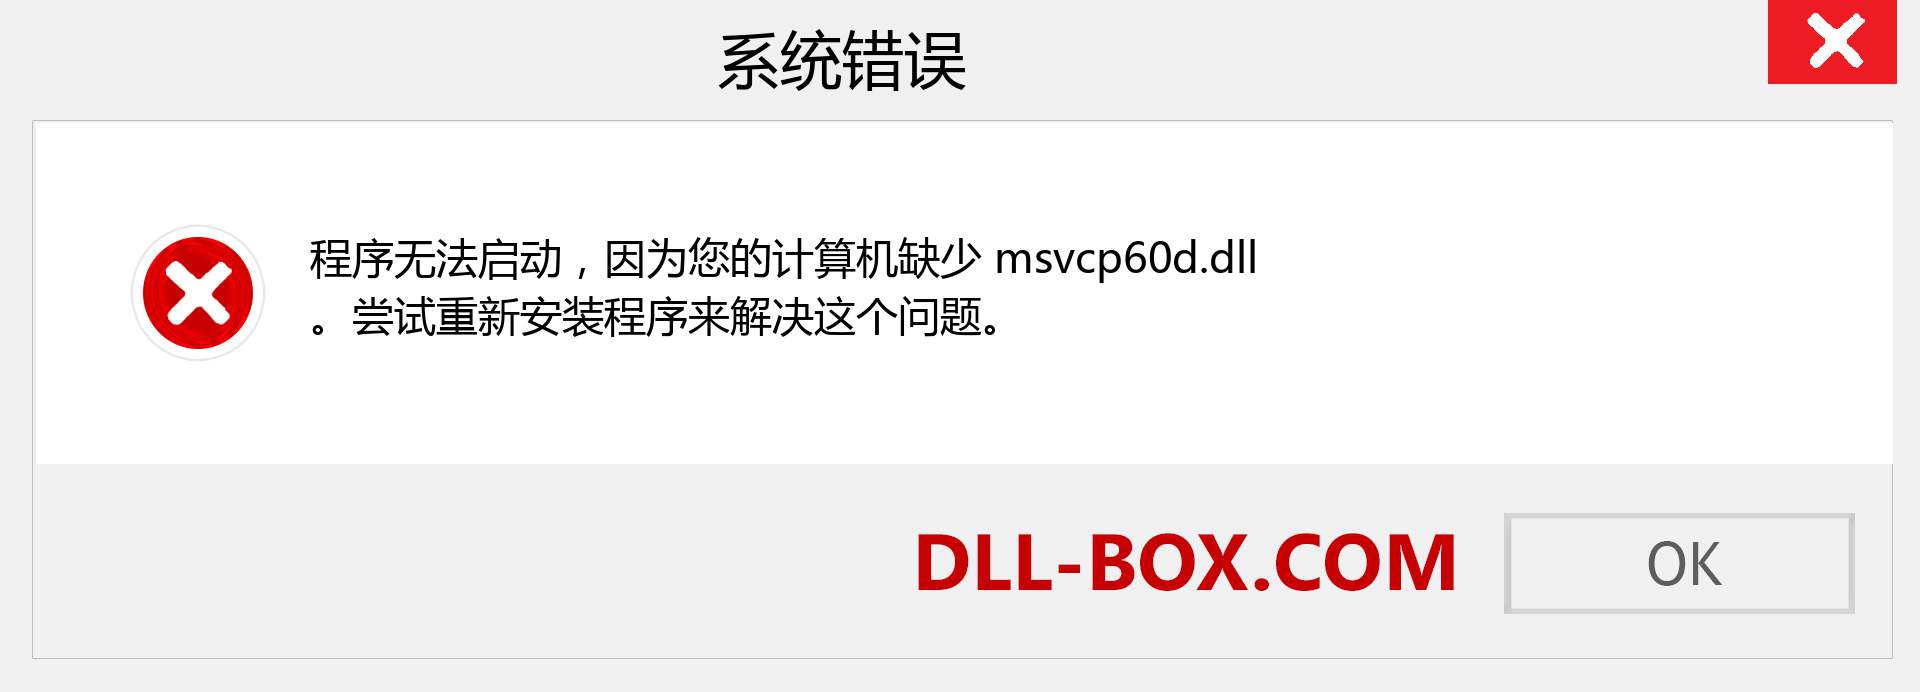 msvcp60d.dll 文件丢失？。 适用于 Windows 7、8、10 的下载 - 修复 Windows、照片、图像上的 msvcp60d dll 丢失错误